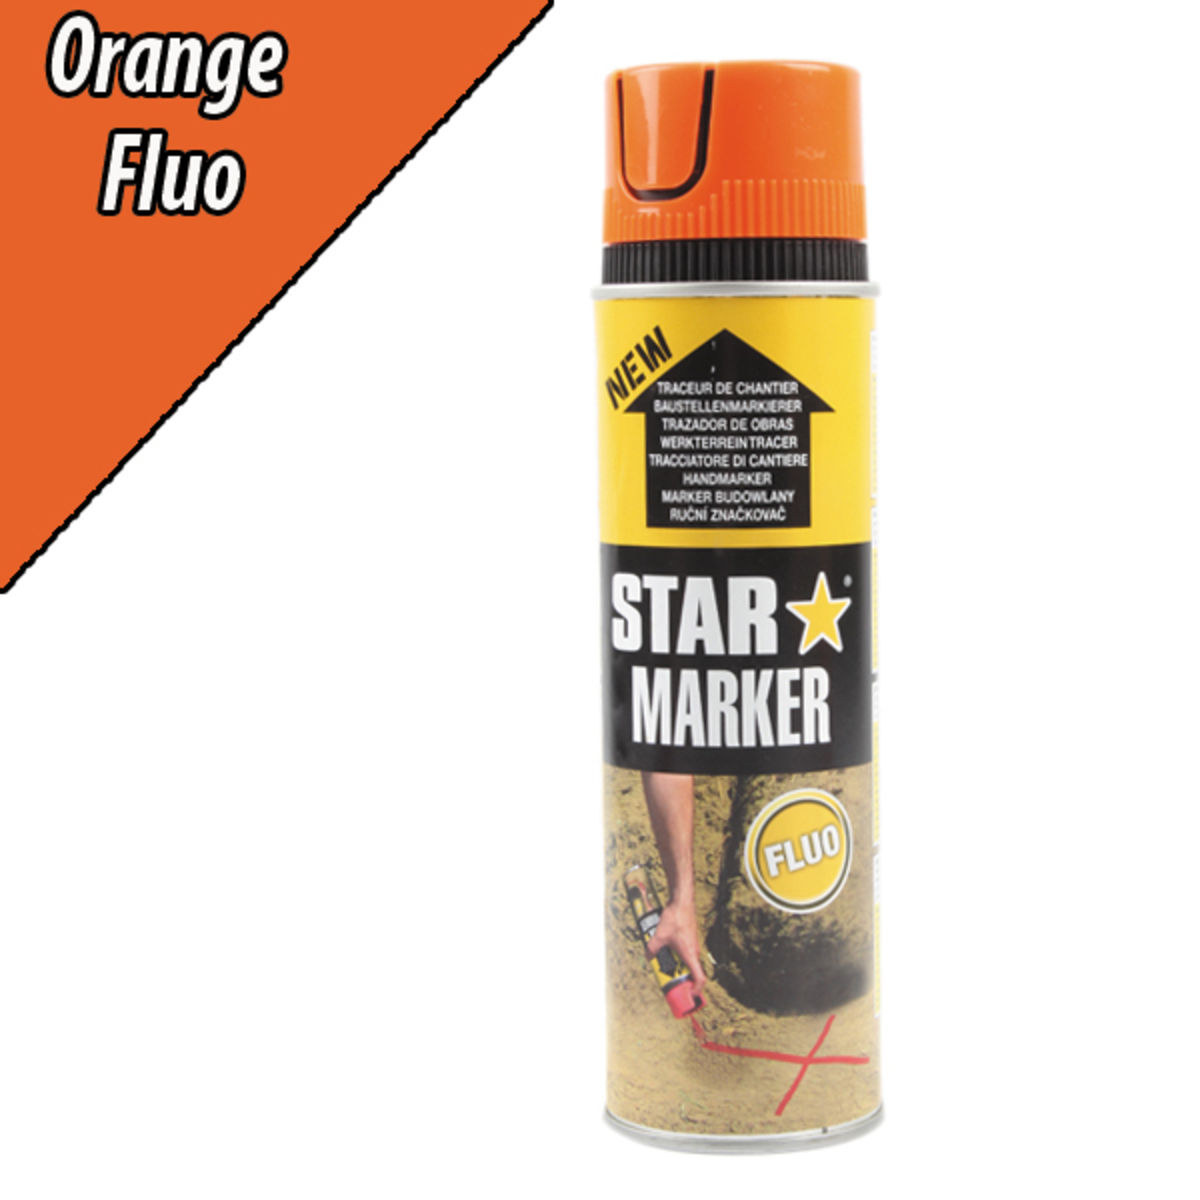 Traceur de chantier aérosol fluo orange, STAR MARKER, 500 ml